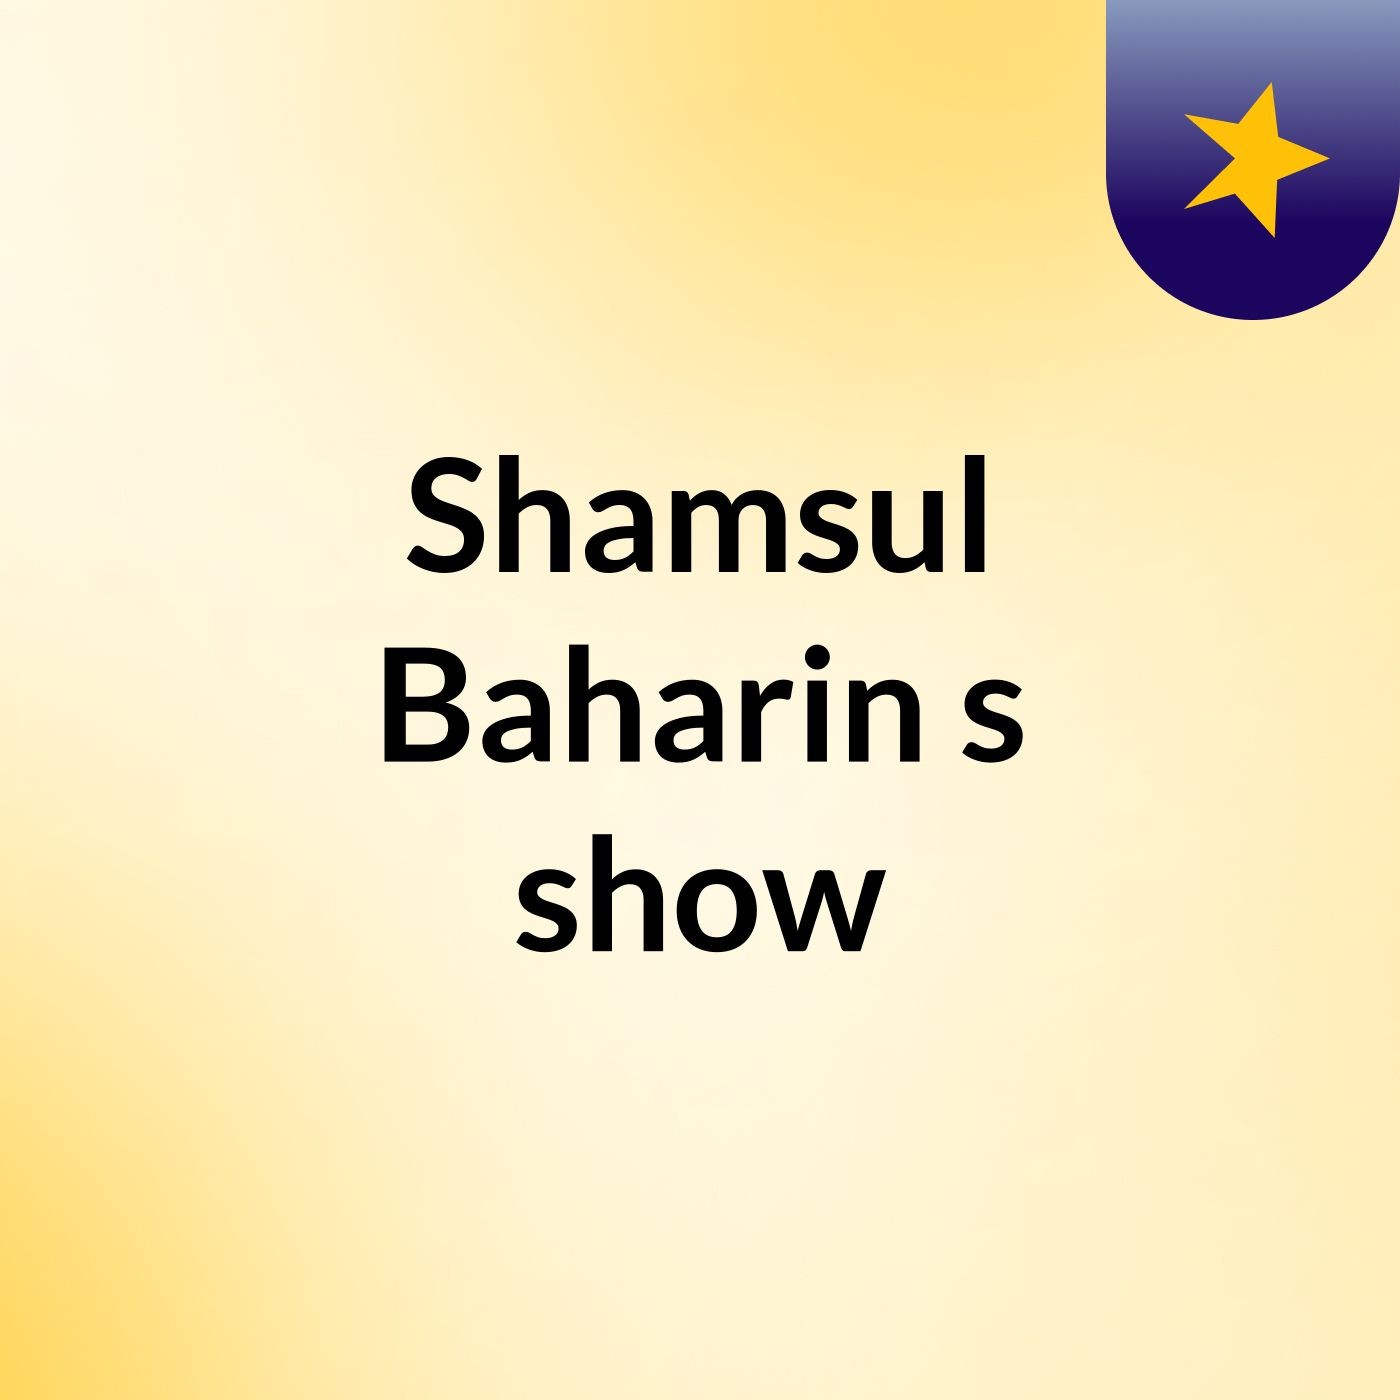 Shamsul Baharin's show